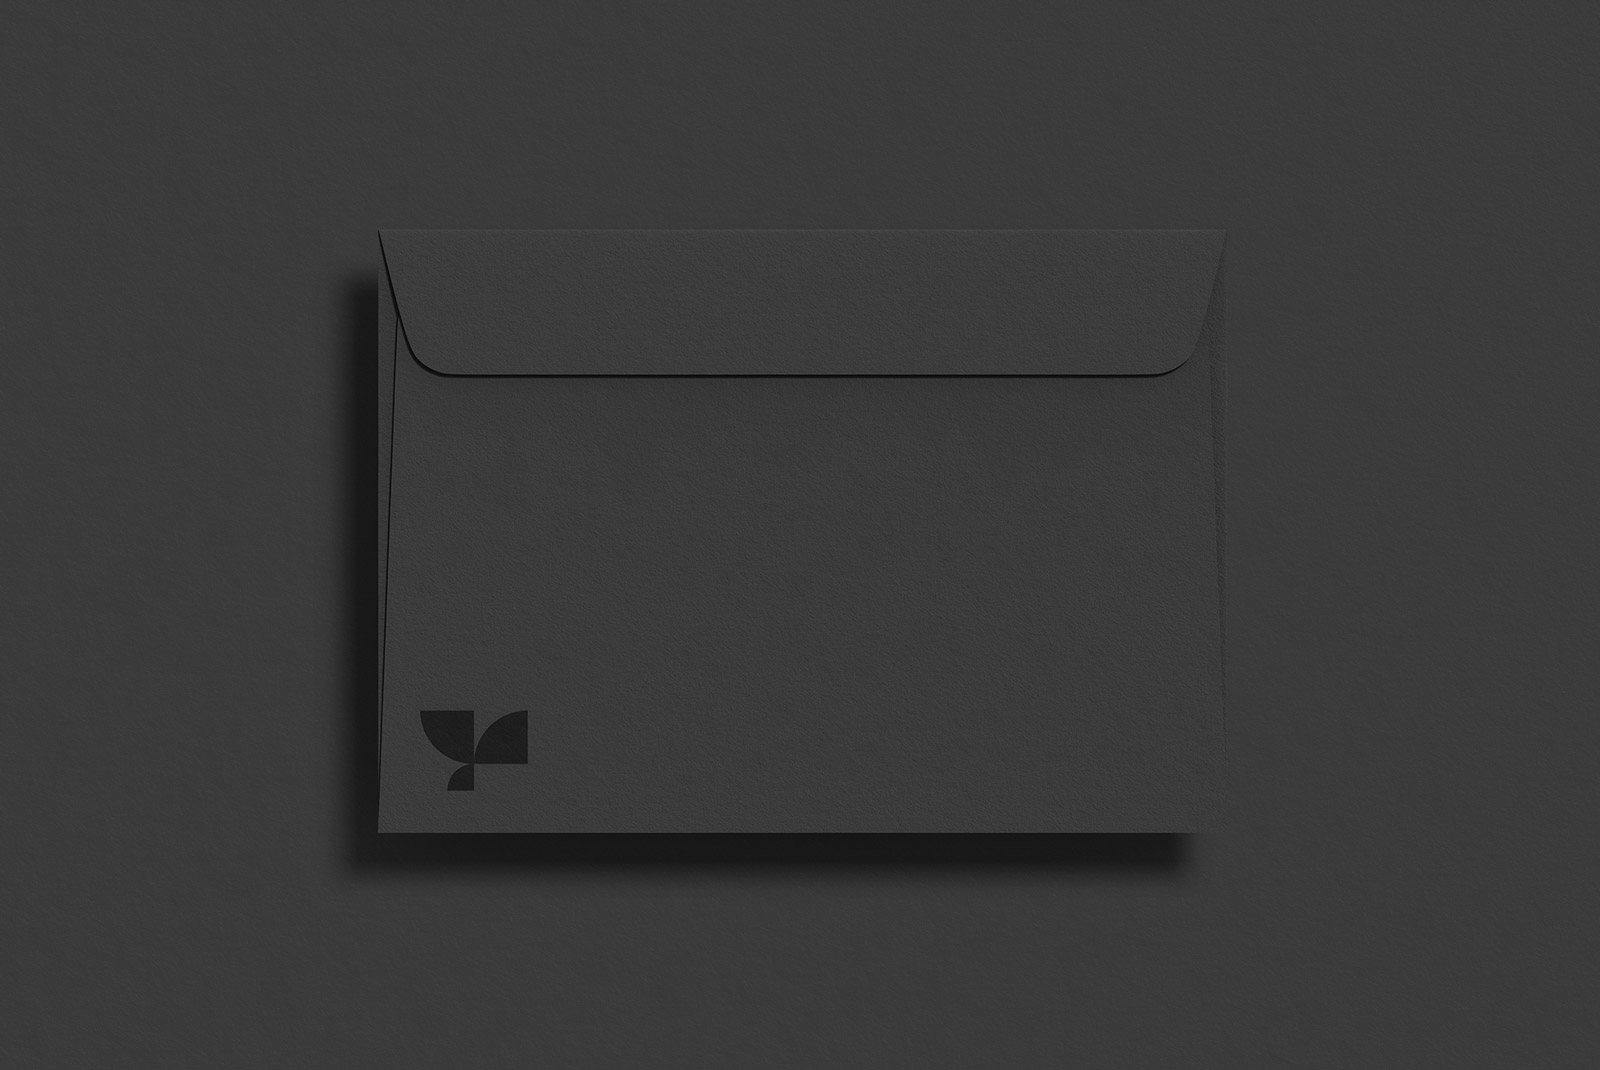 Black envelope mockup with minimalist logo on dark background, elegant presentation for stationery designs, branding assets for designers.